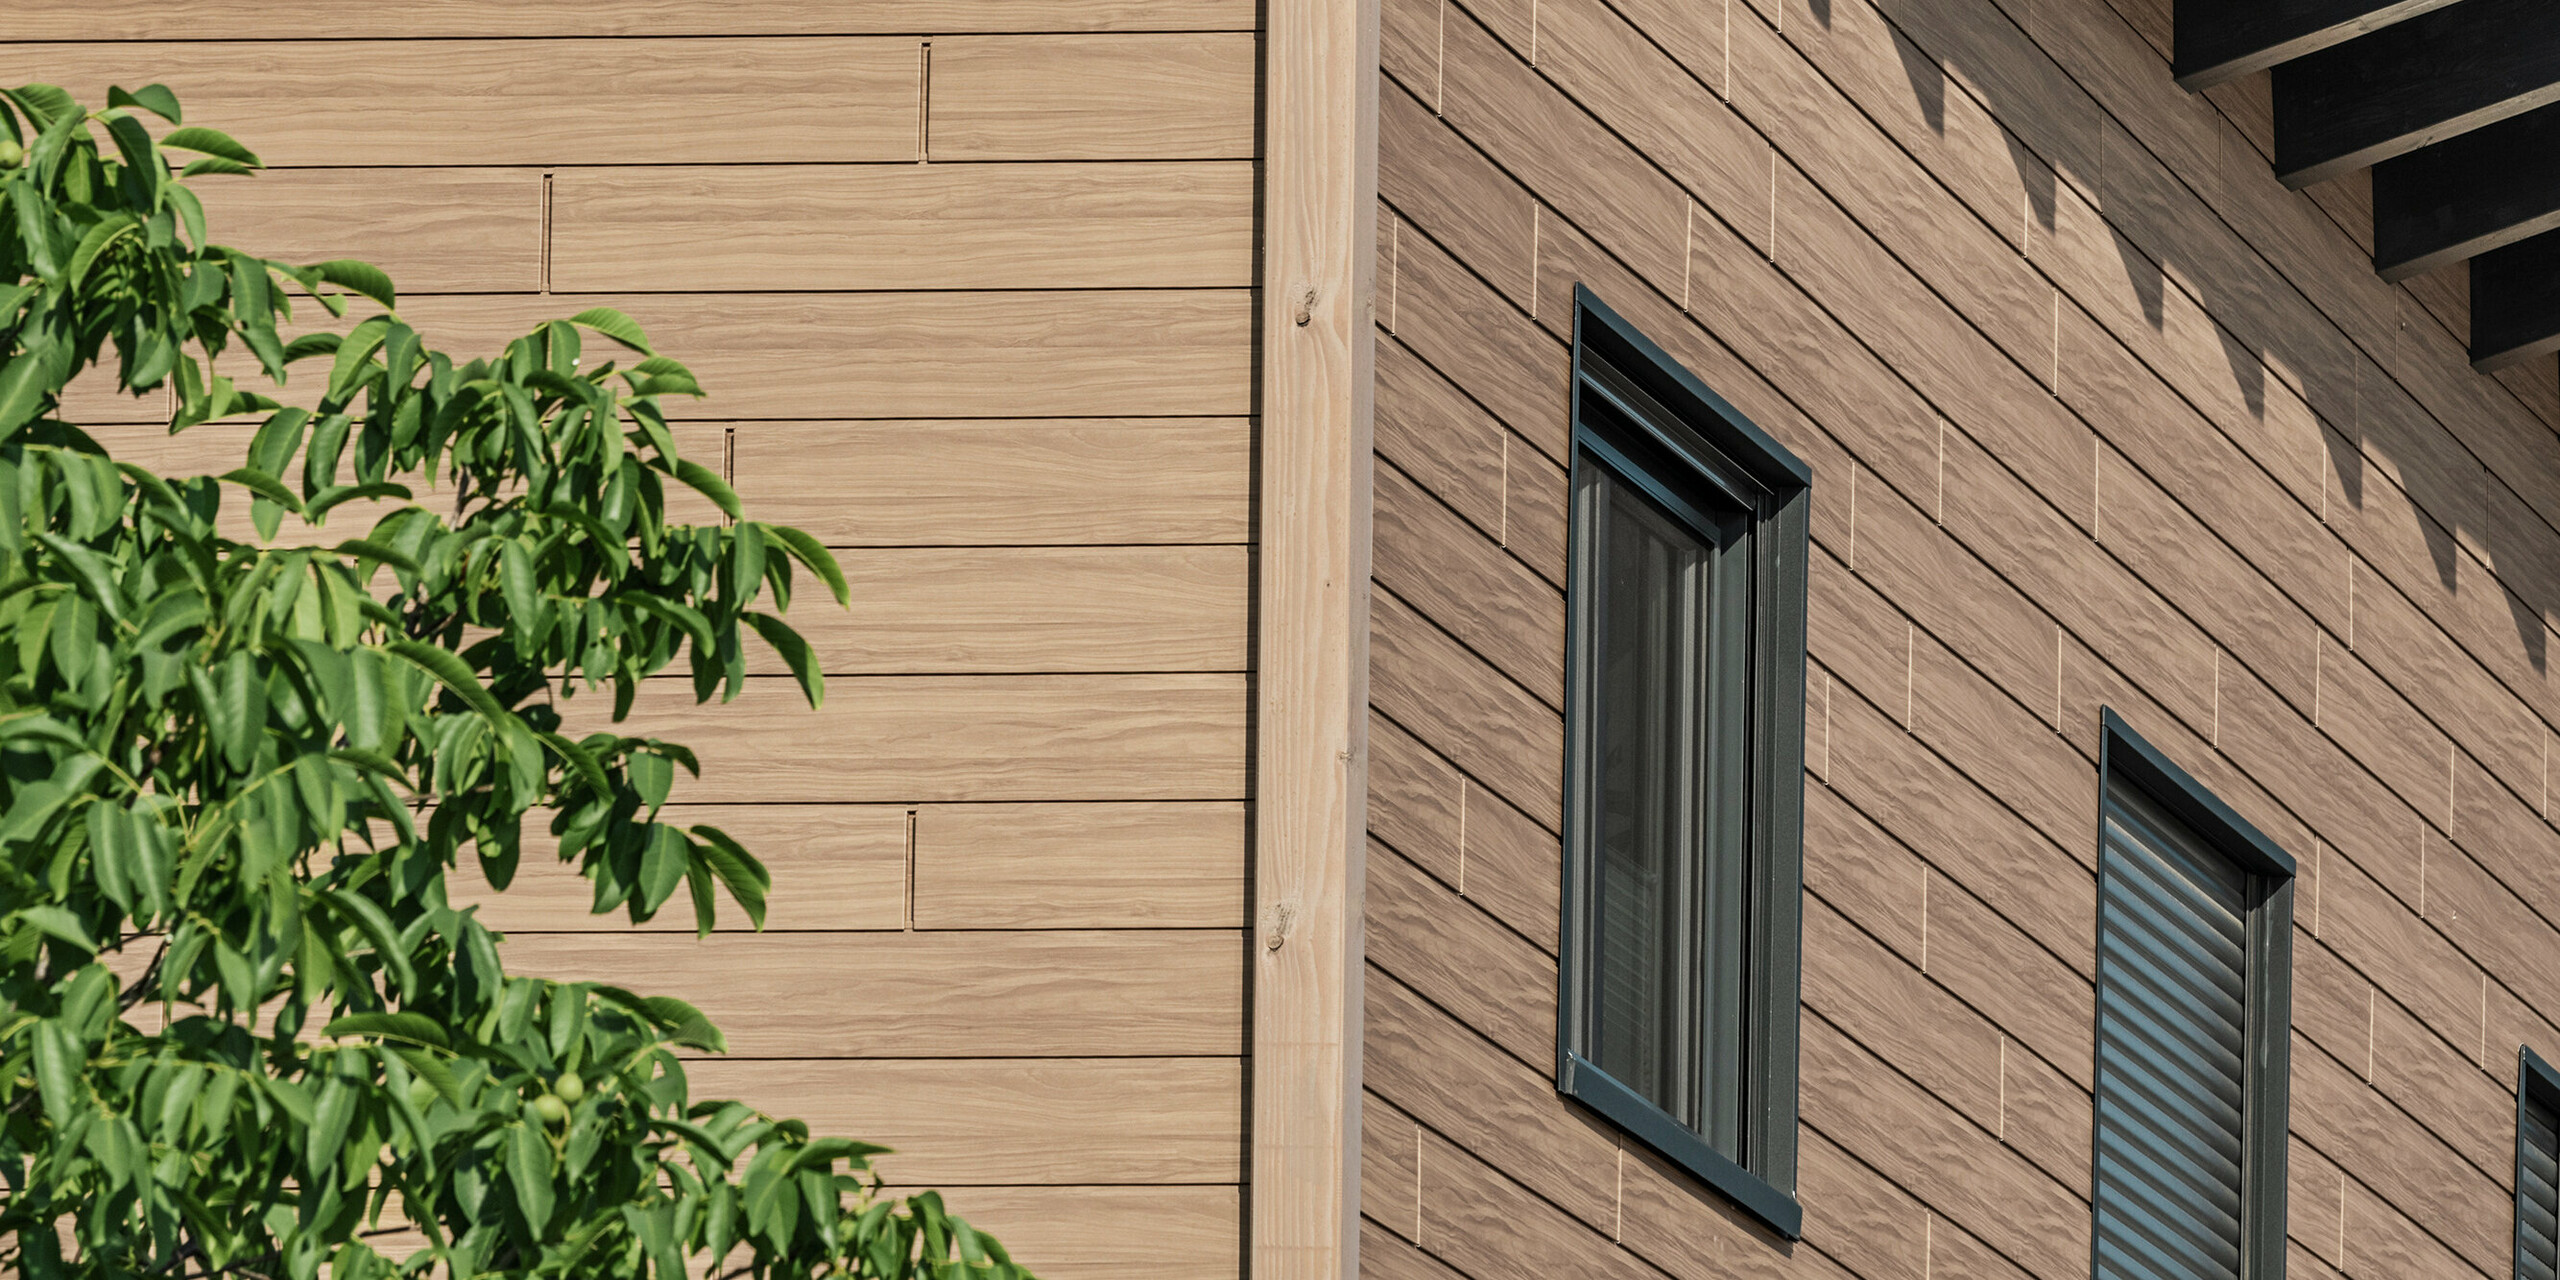 Blick von unten auf die Gebäudekante am Obergeschoss eines Einfamilienhauses in Bruck. Das obere Stockwerk ist mit PREFA Sidings in Walnuss Braun verkleidet. Die Aluminiumfassade in Holzoptik sorgt für einen harmonischen Gesamteindruck des Gebäudes.